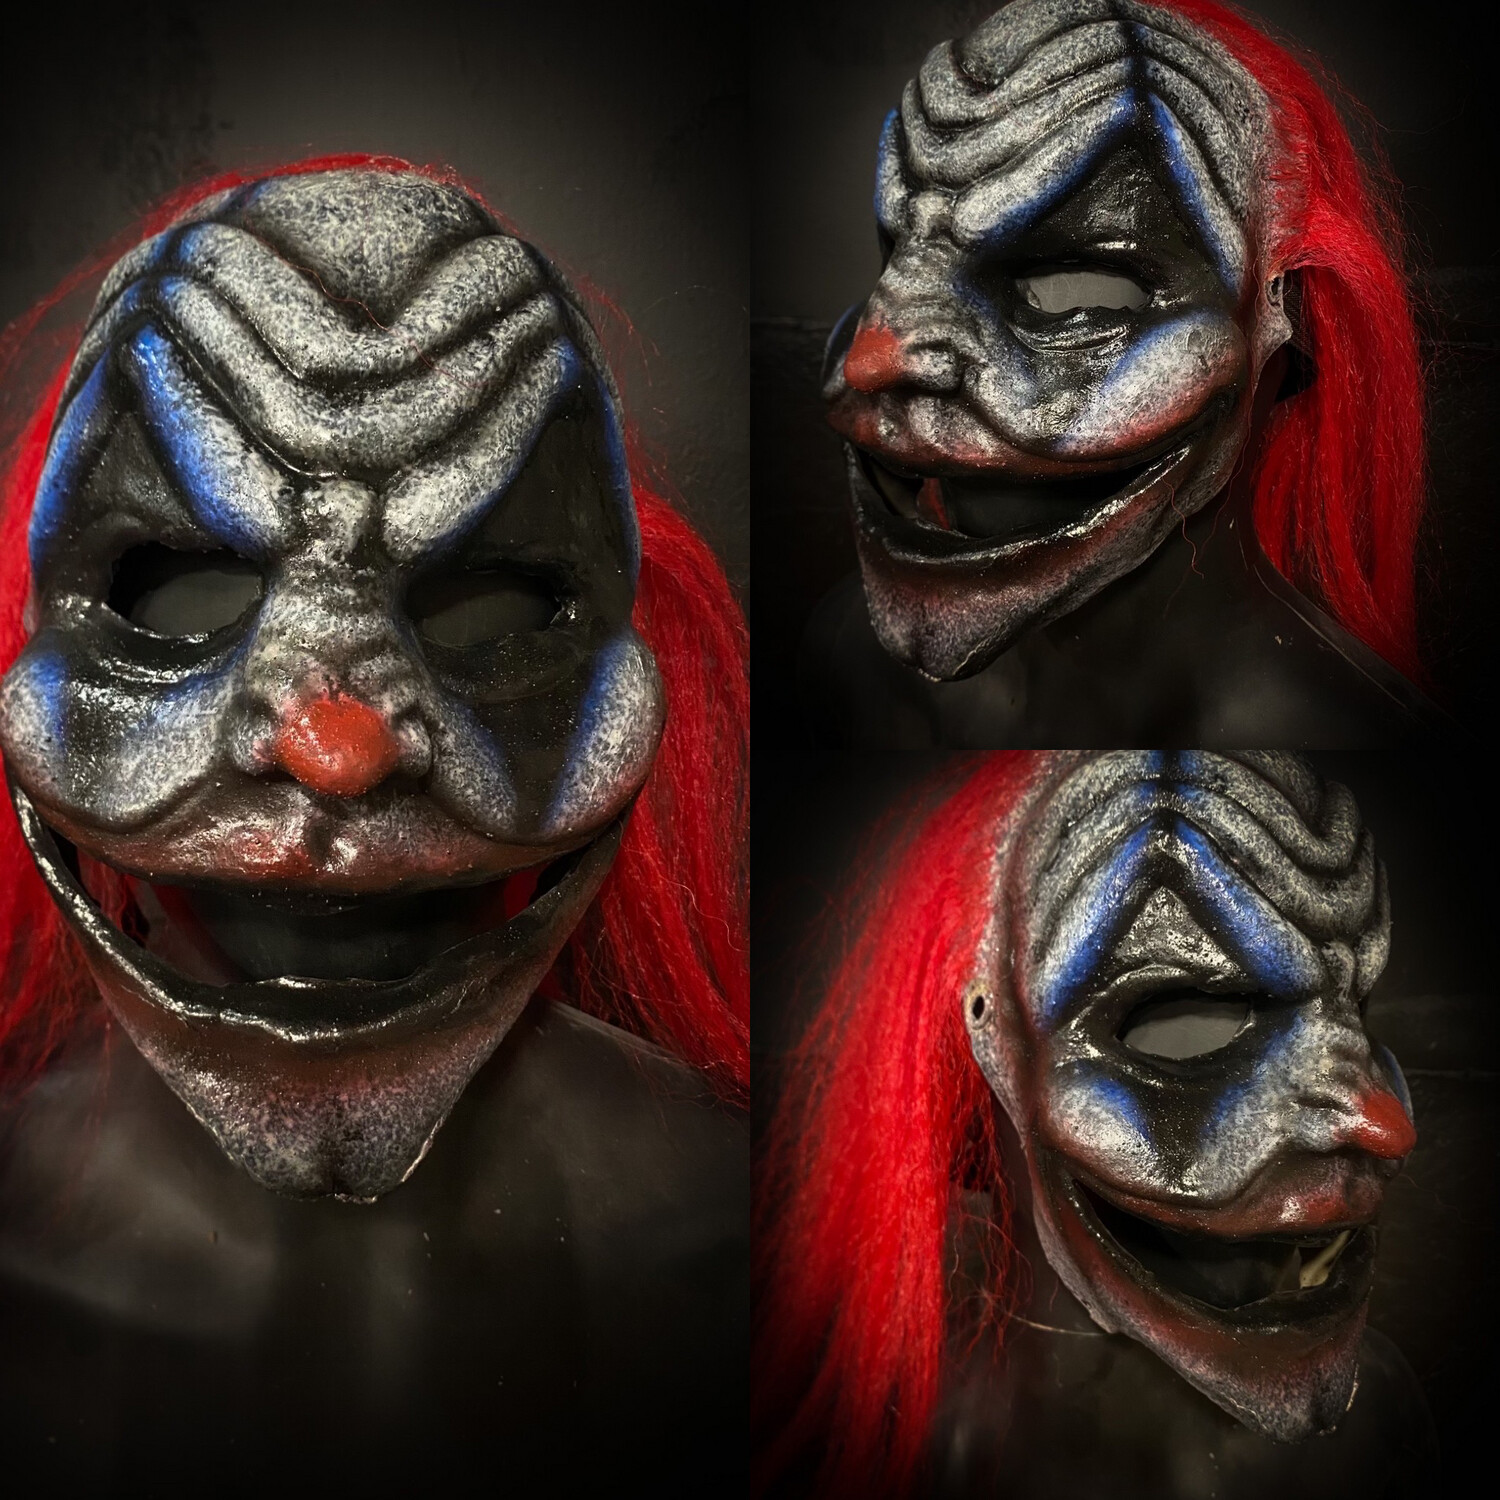 Grin Clown - As shown